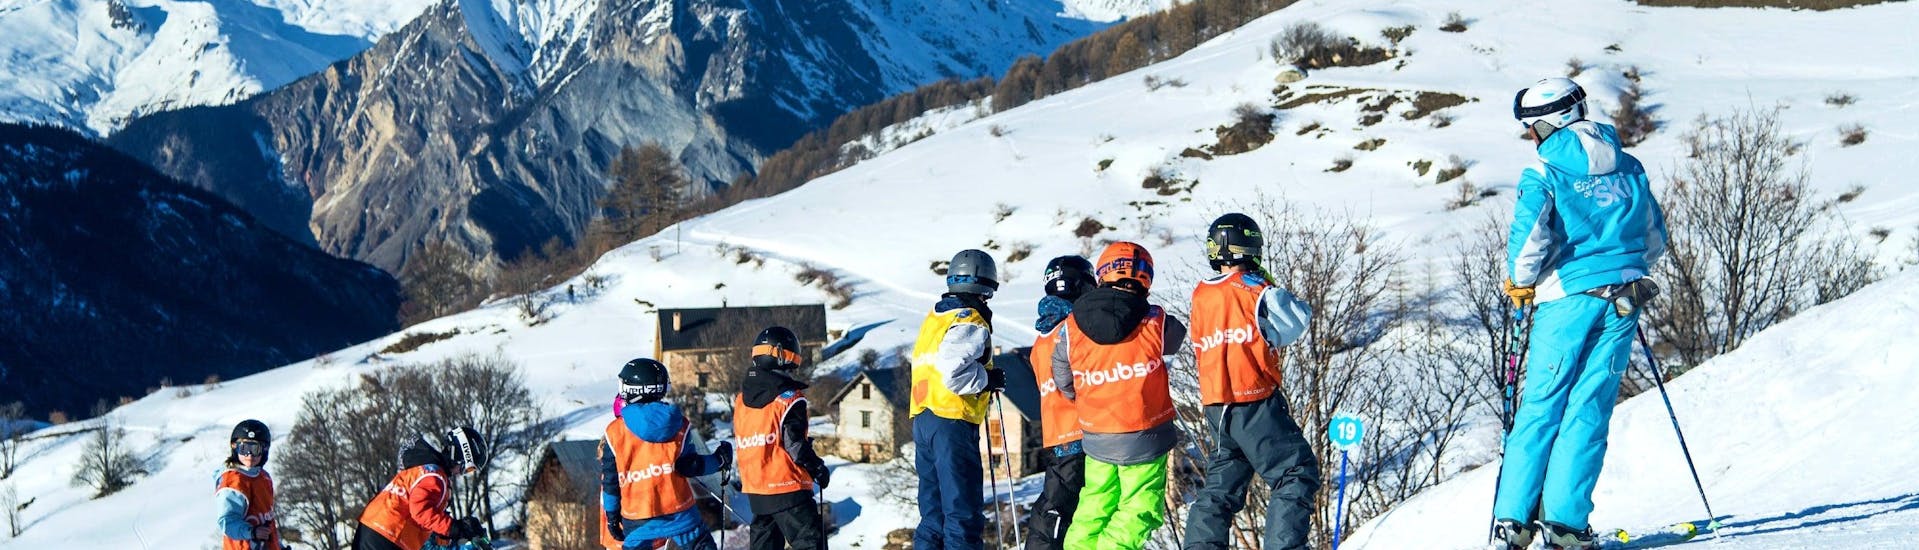 Een groep skiërs die deelnemen aan een skiles voor kinderen in de ESI Ozone in Les Orres.